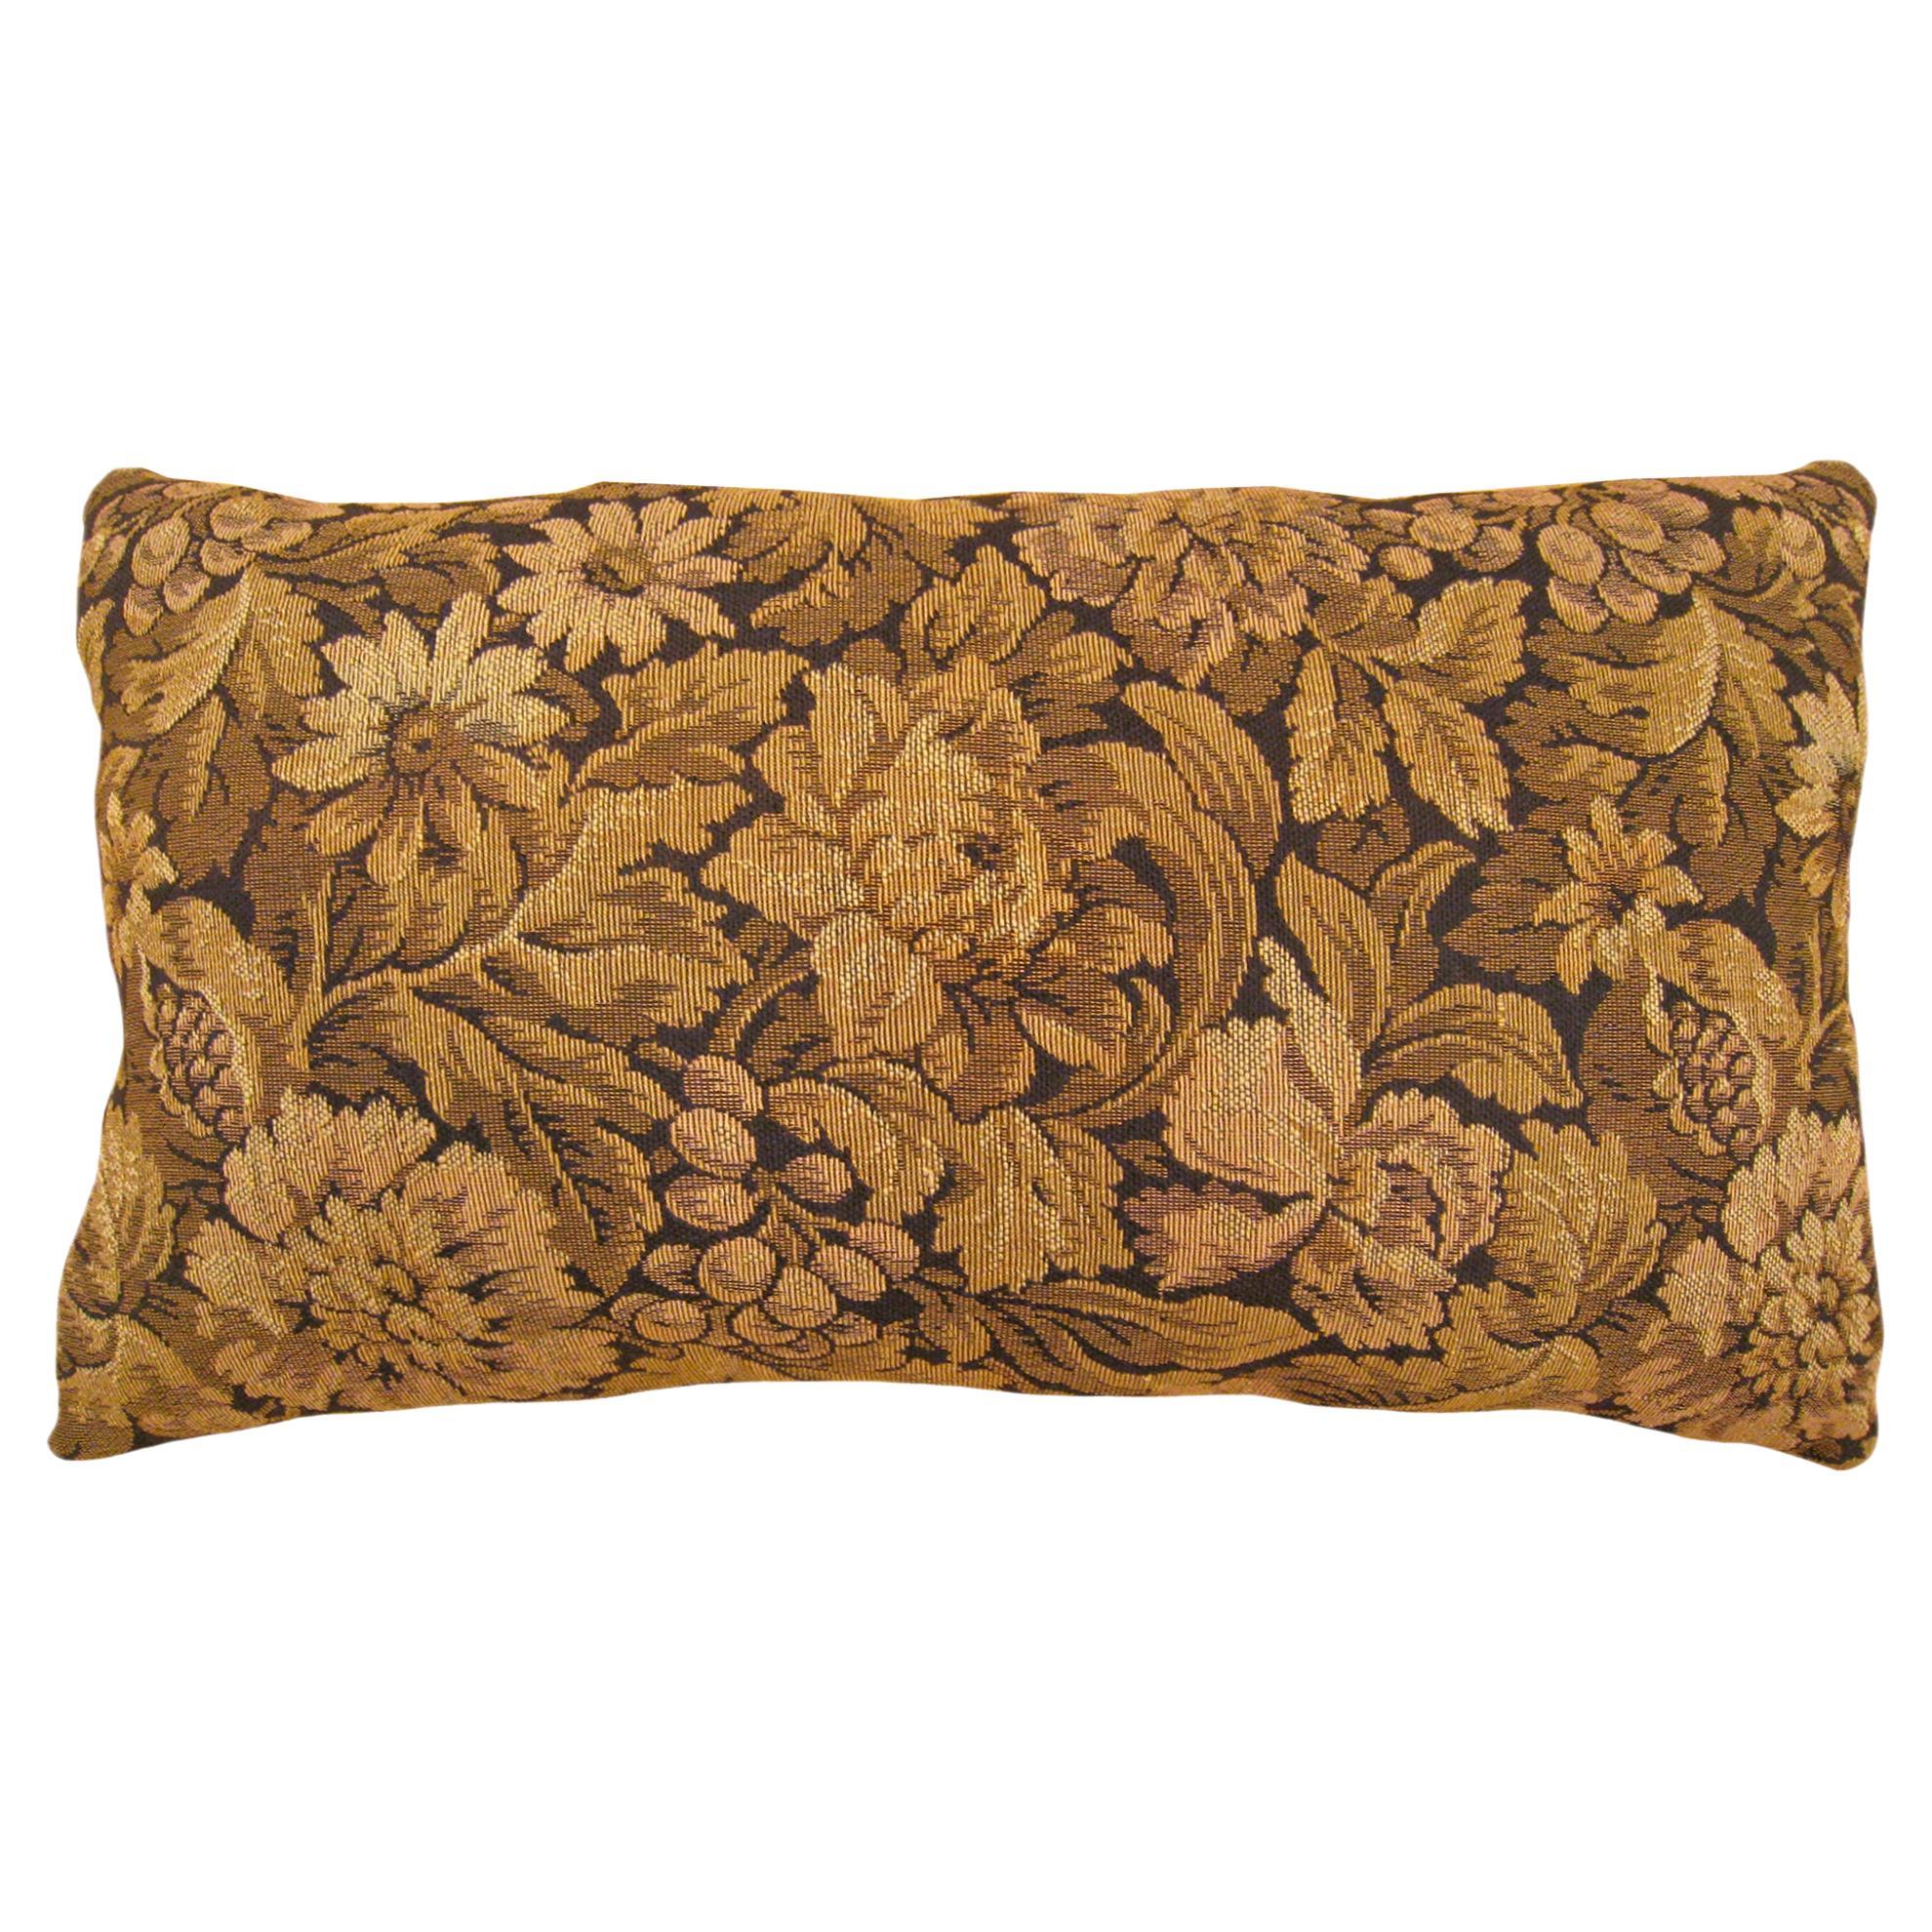 Dekoratives antikes französisches Wandteppich-Kissen mit Blumenelementen und Dekorationselementen